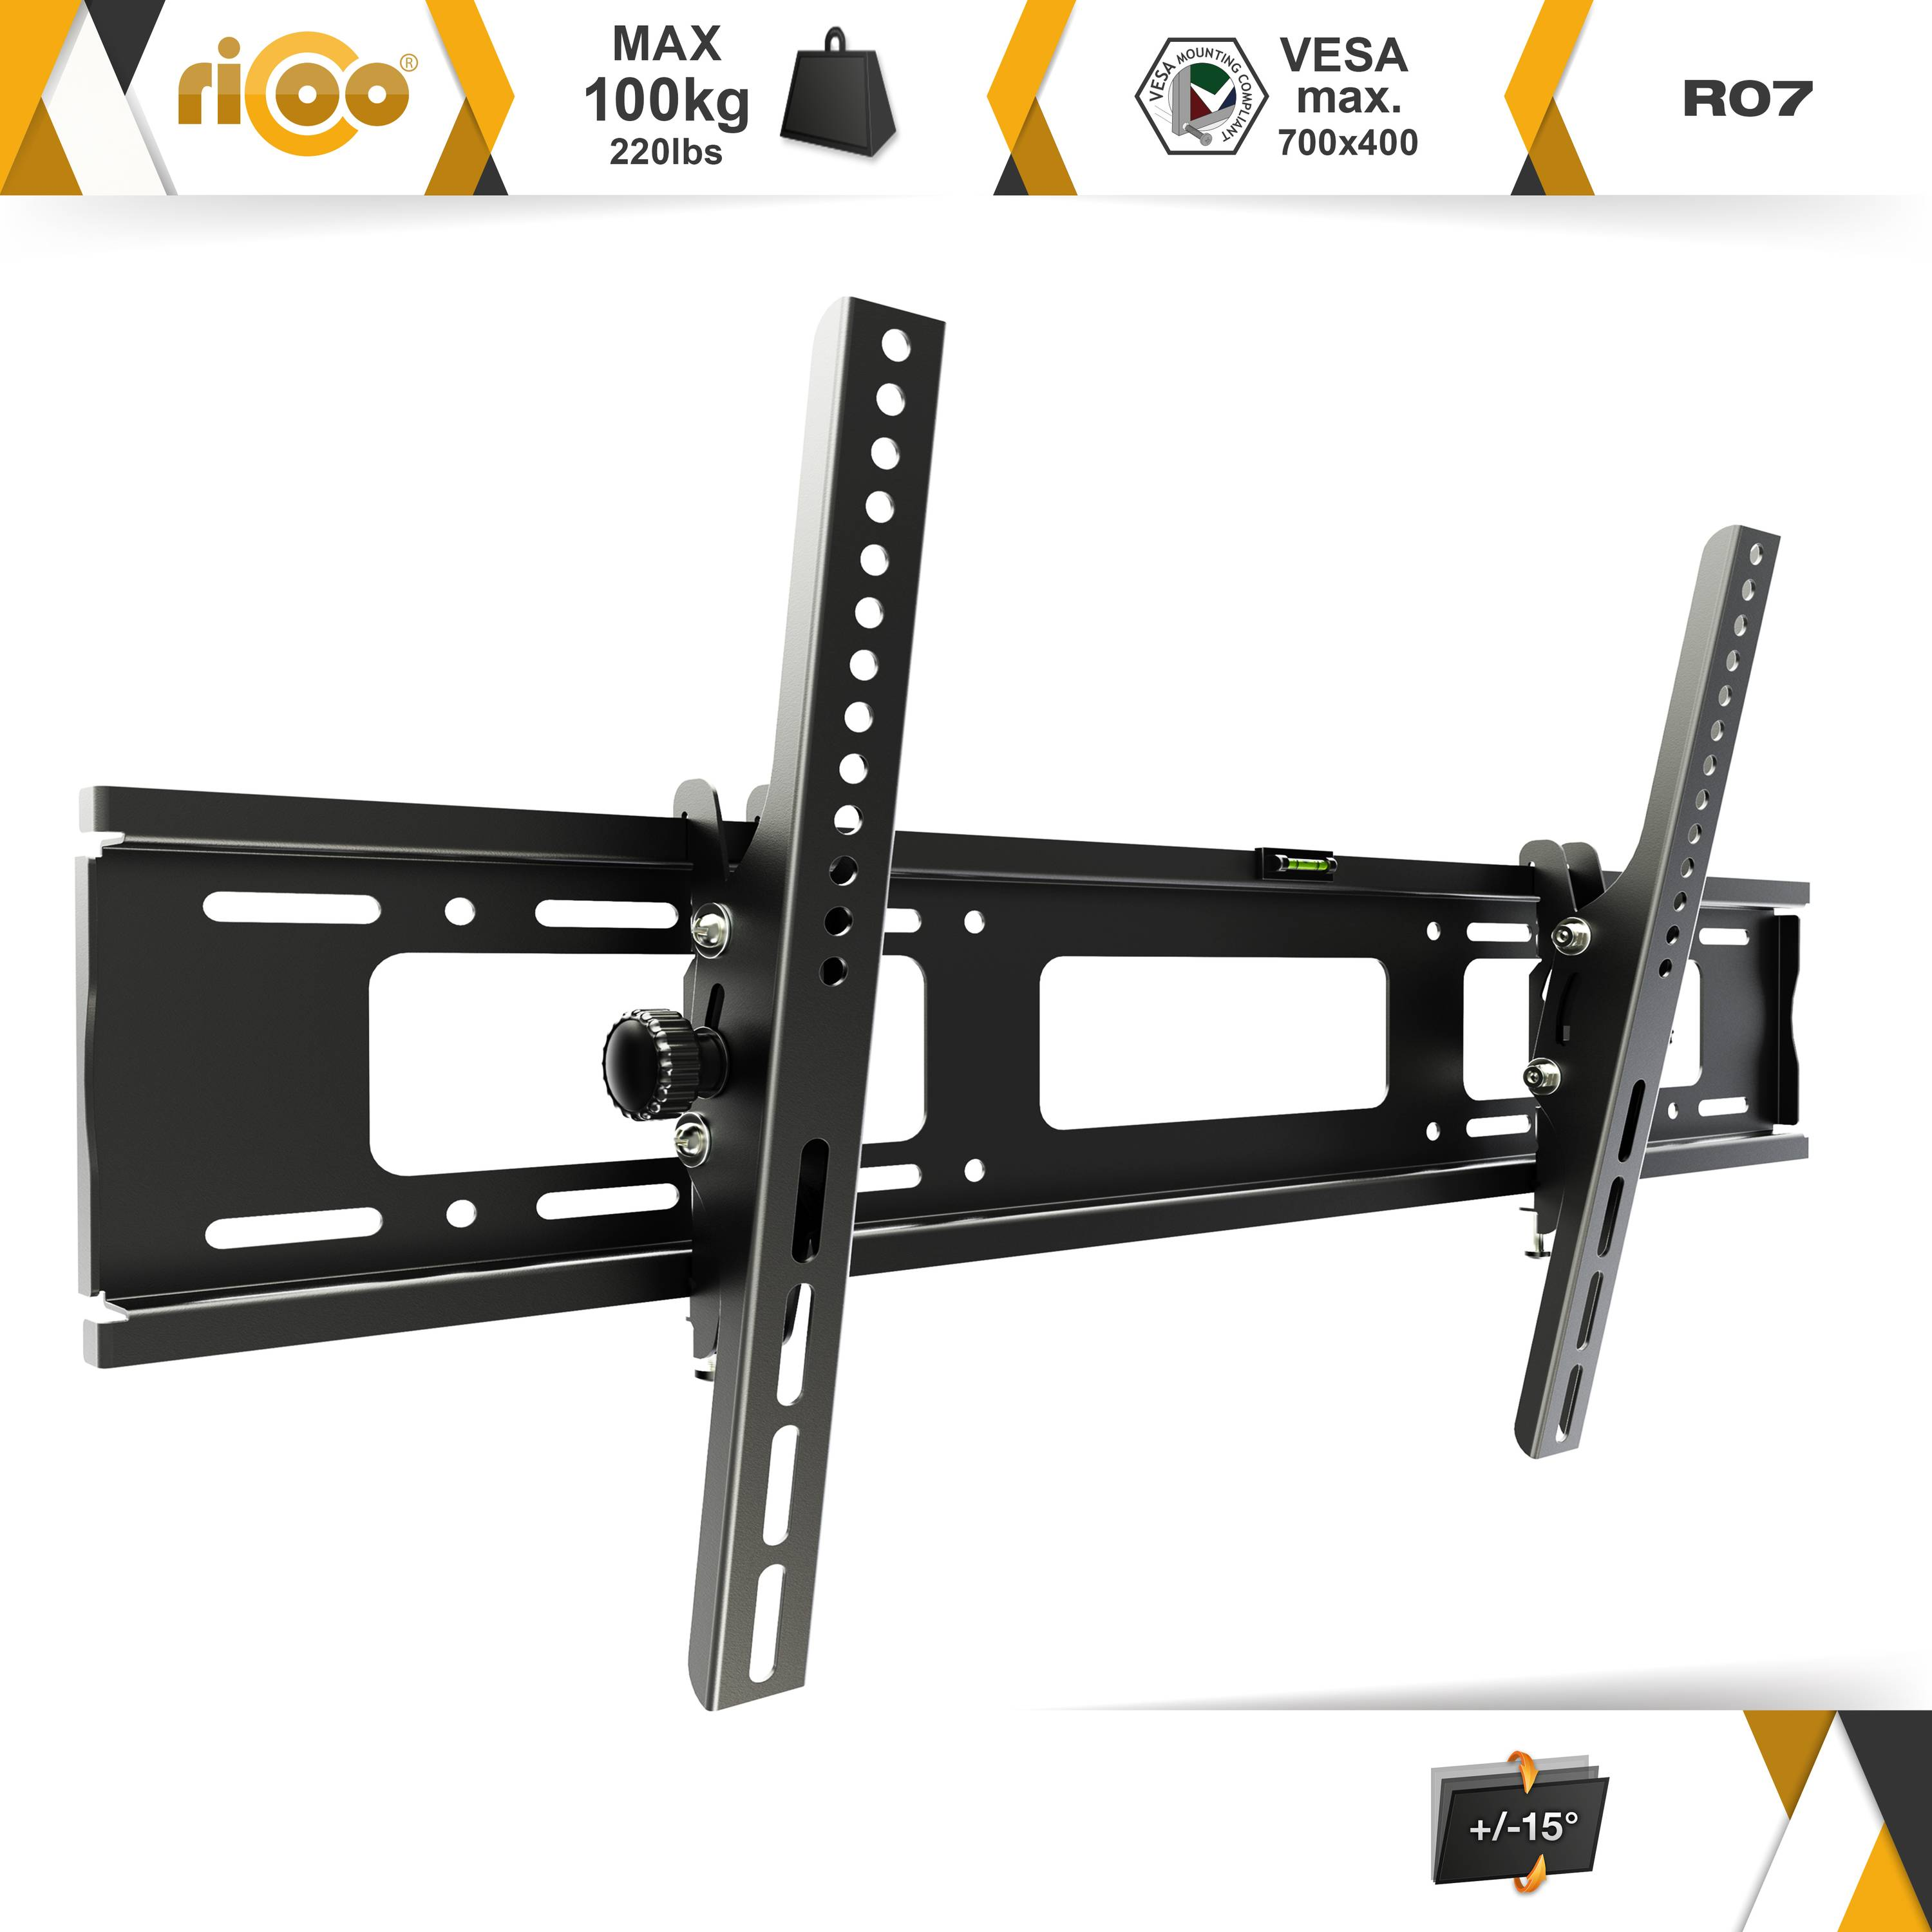 RICOO bis curved neigbar TV Wand für 400 Fernseher Schwarz auch flach 600 VESA Halterung universal R07 Wandhalterung, x